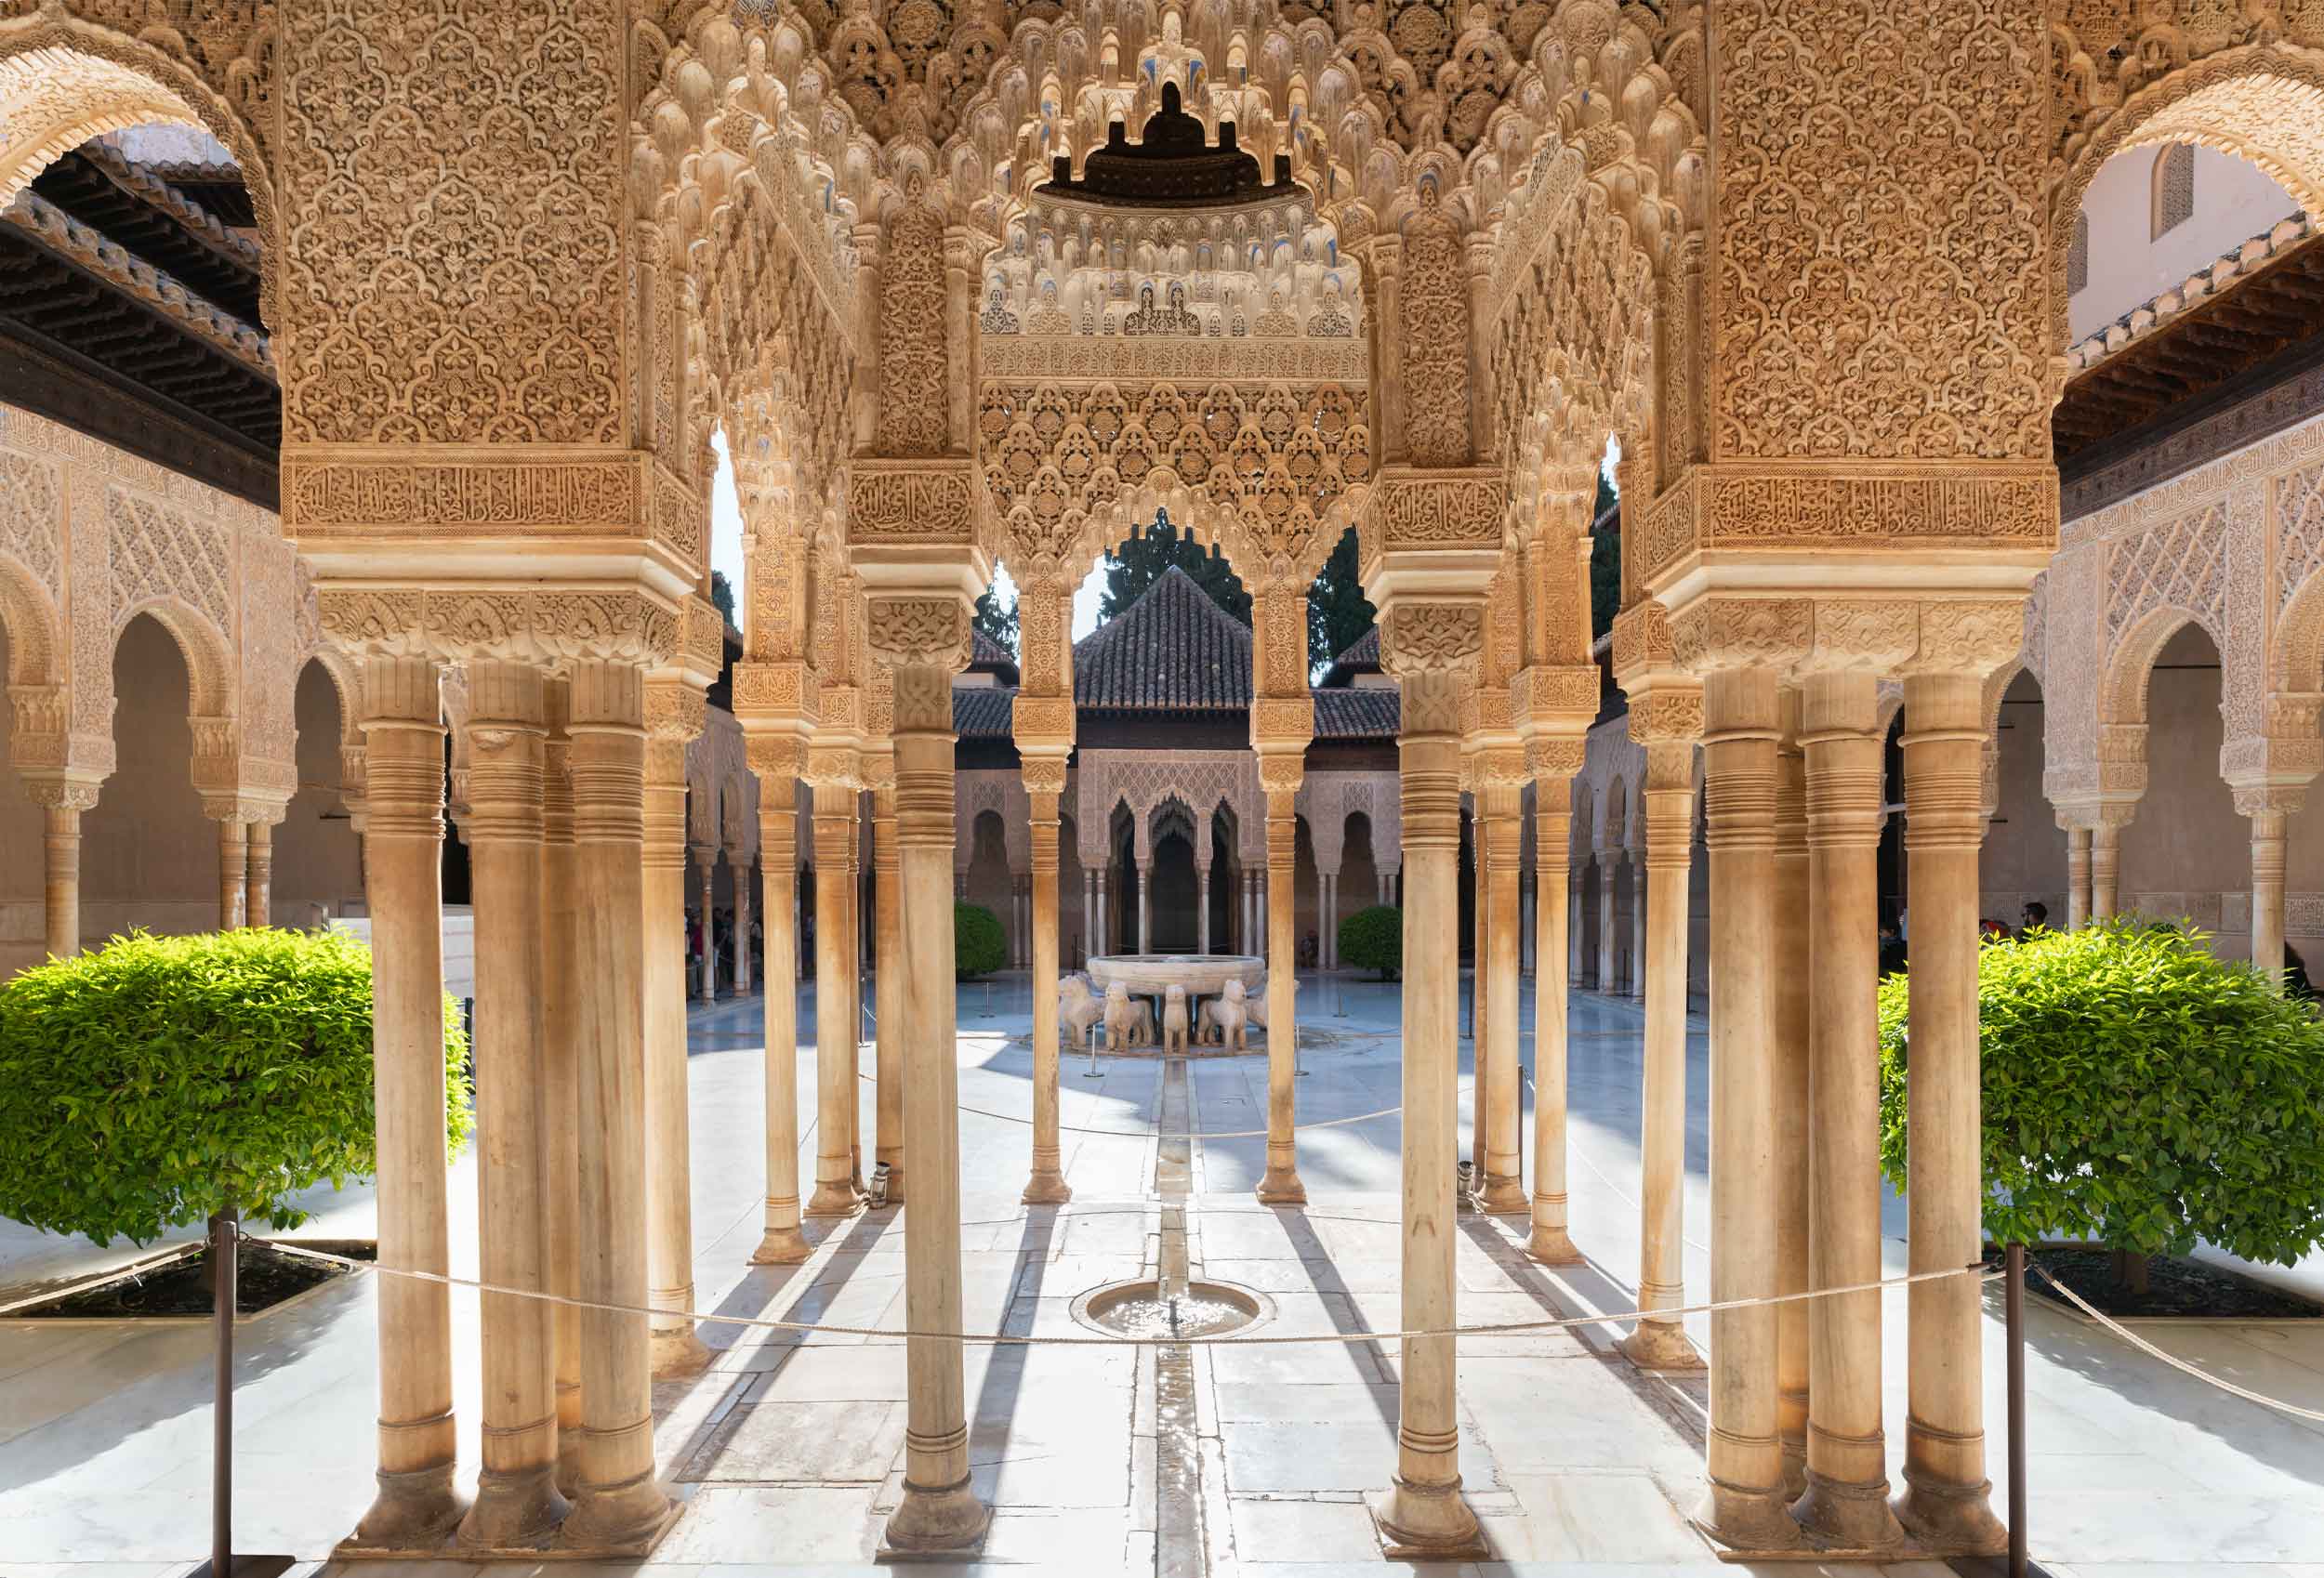 Spain alhambra Alhambra, Spain: